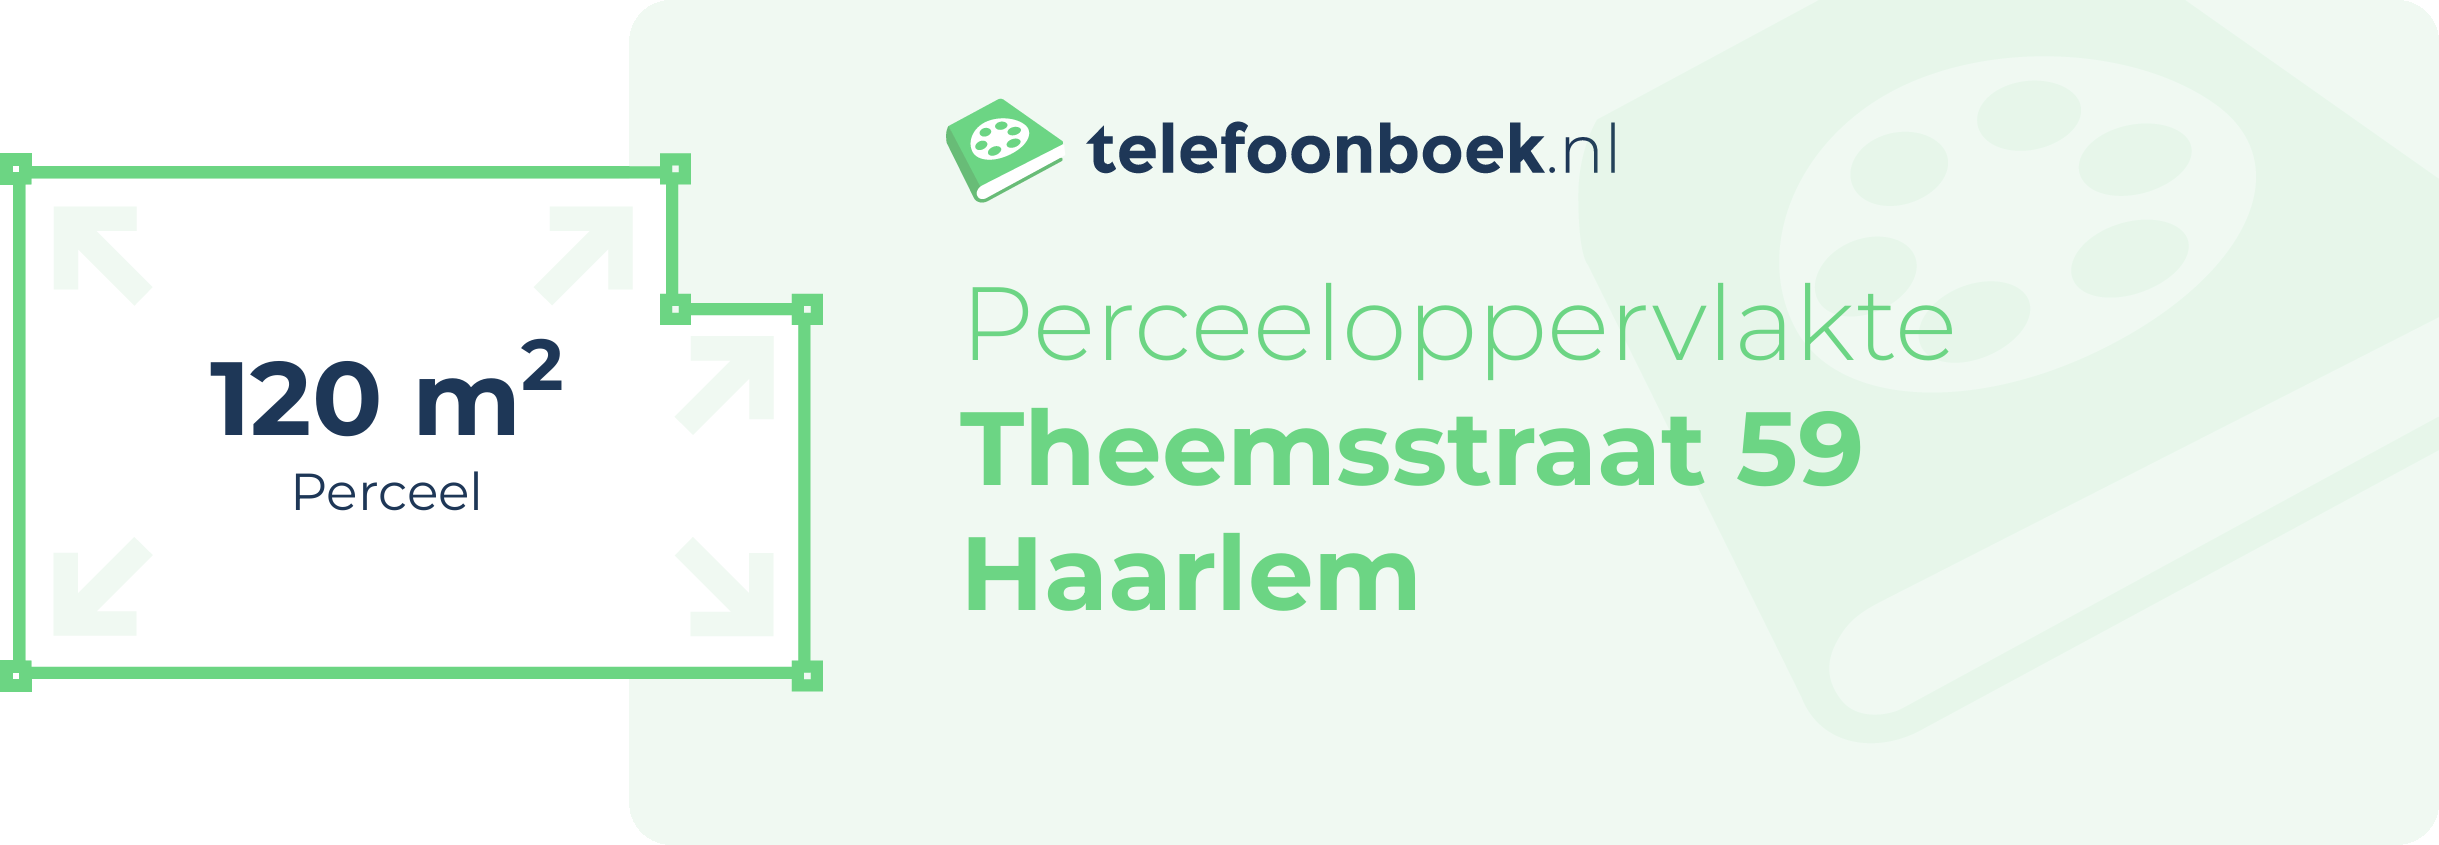 Perceeloppervlakte Theemsstraat 59 Haarlem